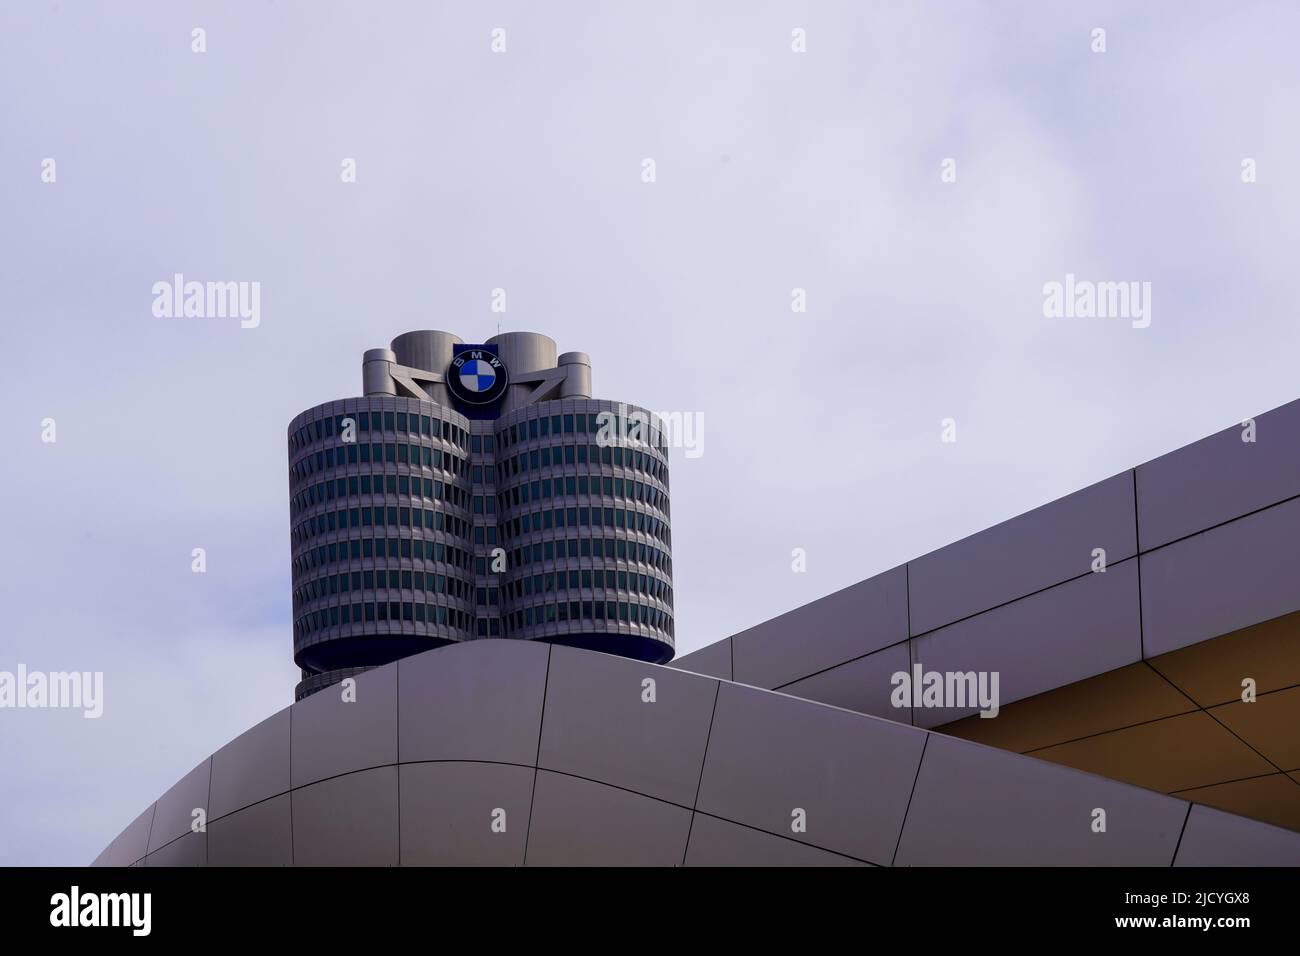 La torre BMW, el BMW de cuatro cilindros es el edificio principal de la administración y el hito del fabricante de coches BMW en Munich, Alemania, 22.4.22 Foto de stock